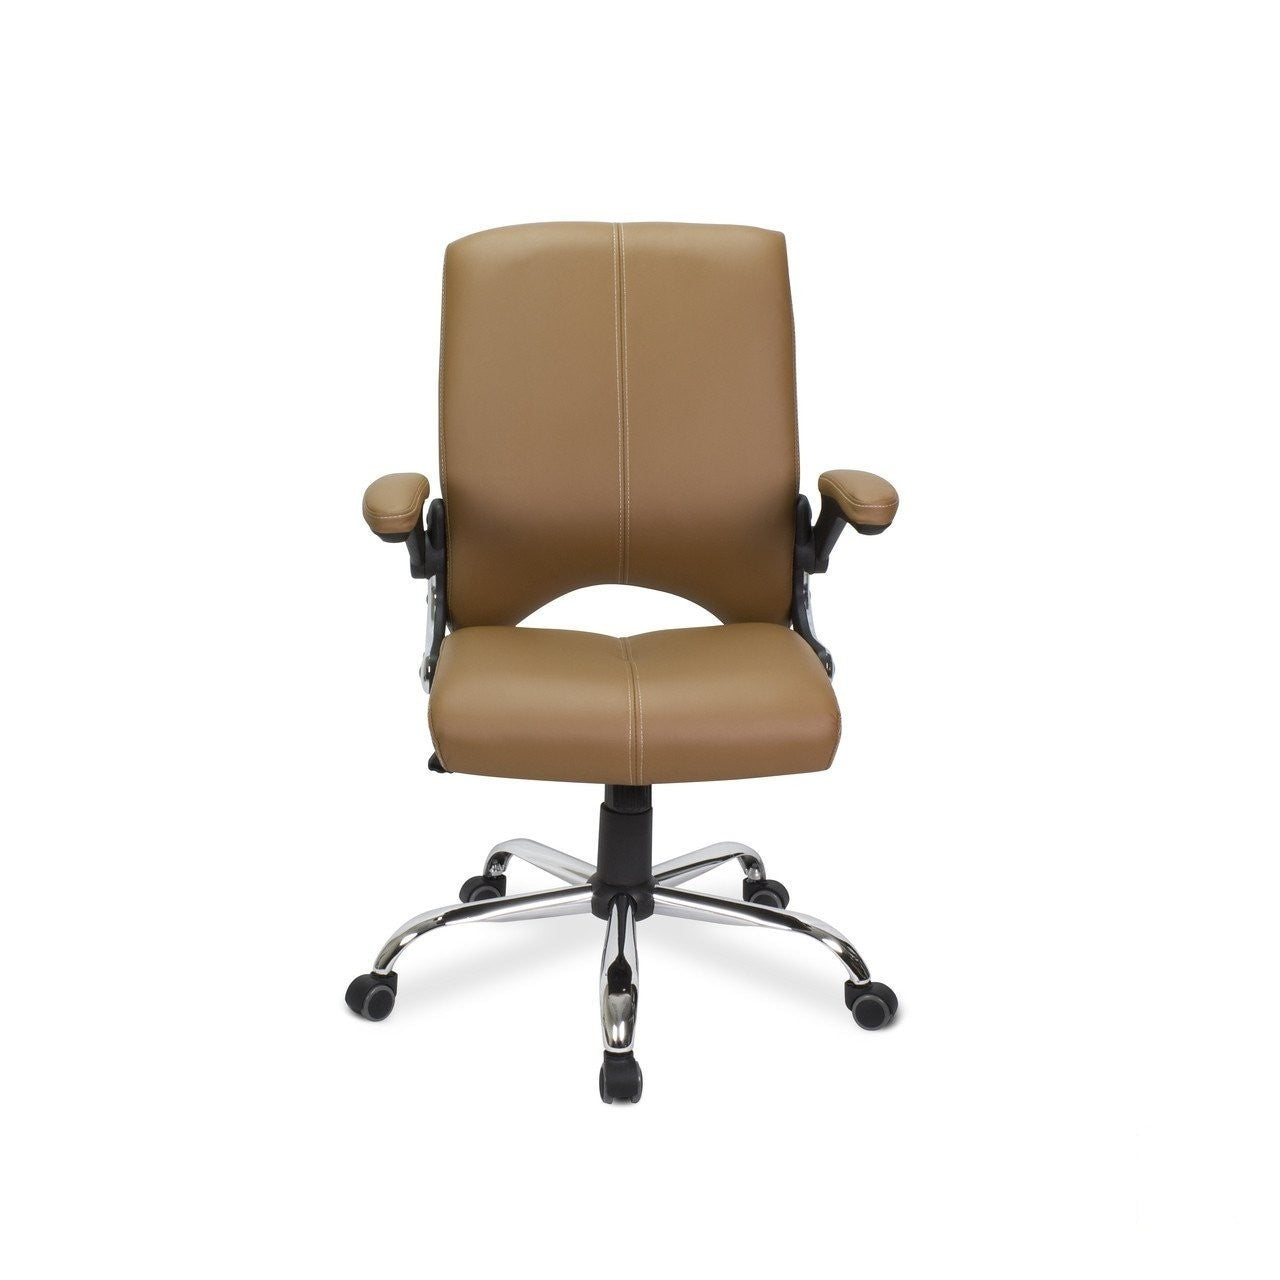 Mayakoba Mayakoba Versa Customer Chair Customer & Waiting Chairs - ChairsThatGive